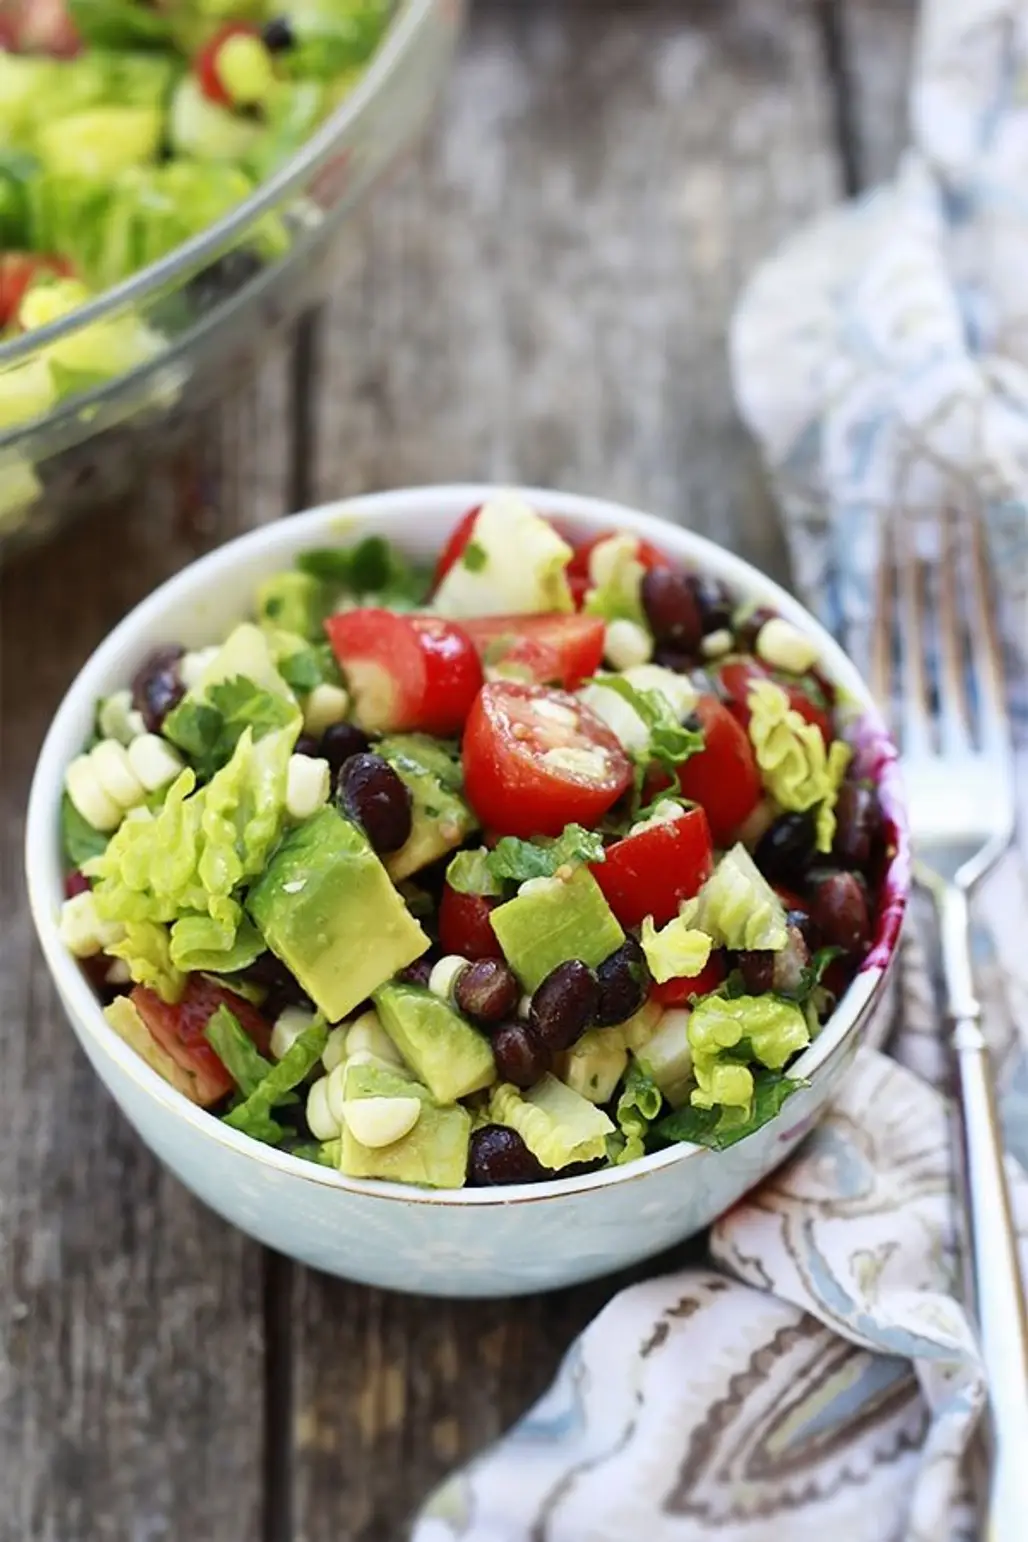 Choose a Healthier Salad